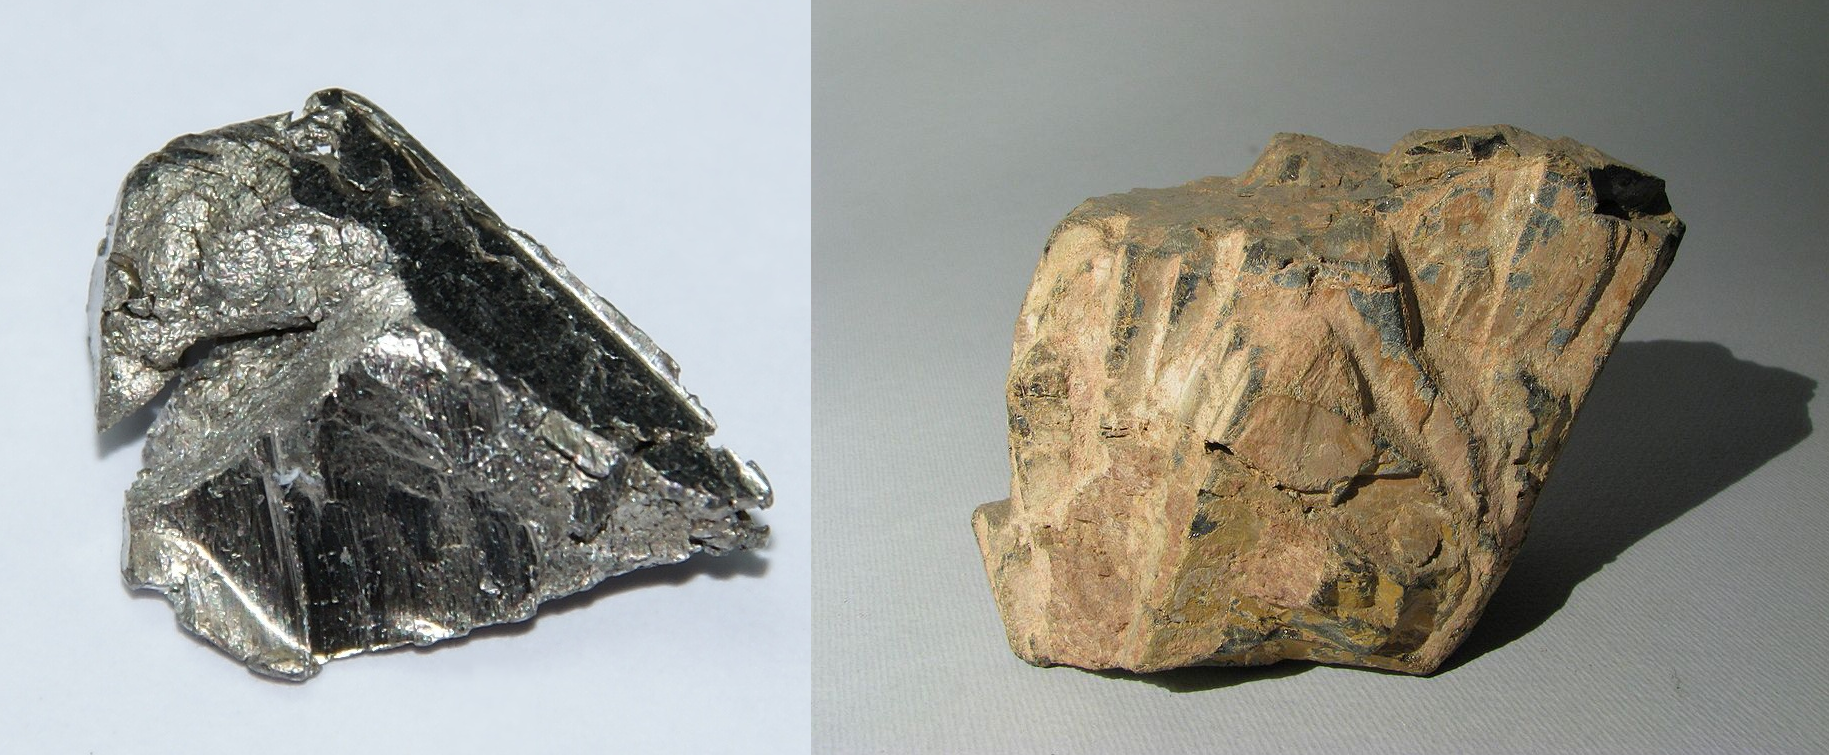 L'ytterbium (à gauche) fait partie des terres rares. Cet élément chimique se trouve dans des minéraux peu communs comme l'euxénite (à droite). © Hi-Res Images of Chemical Elements, Wikimedia Commons, CC by 3.0 et Aangelo, Wikimedia Commons, CC by-sa 3.0